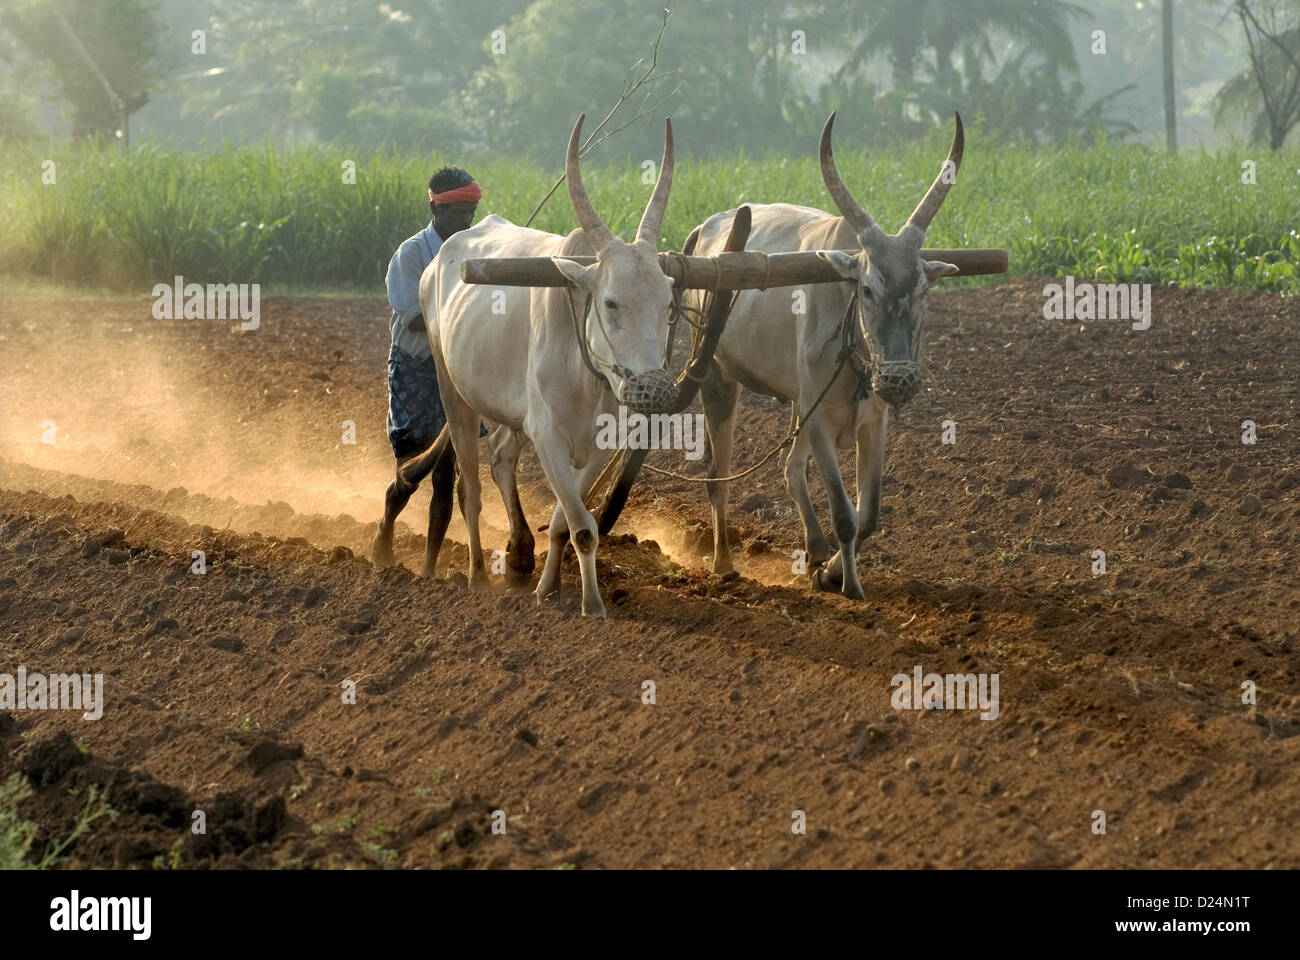 Les bovins domestiques, zébu (Bos indicus) deux taureaux, le labour champ avec le travailleur agricole, Gudallur, Karnataka, Inde, Mars Banque D'Images